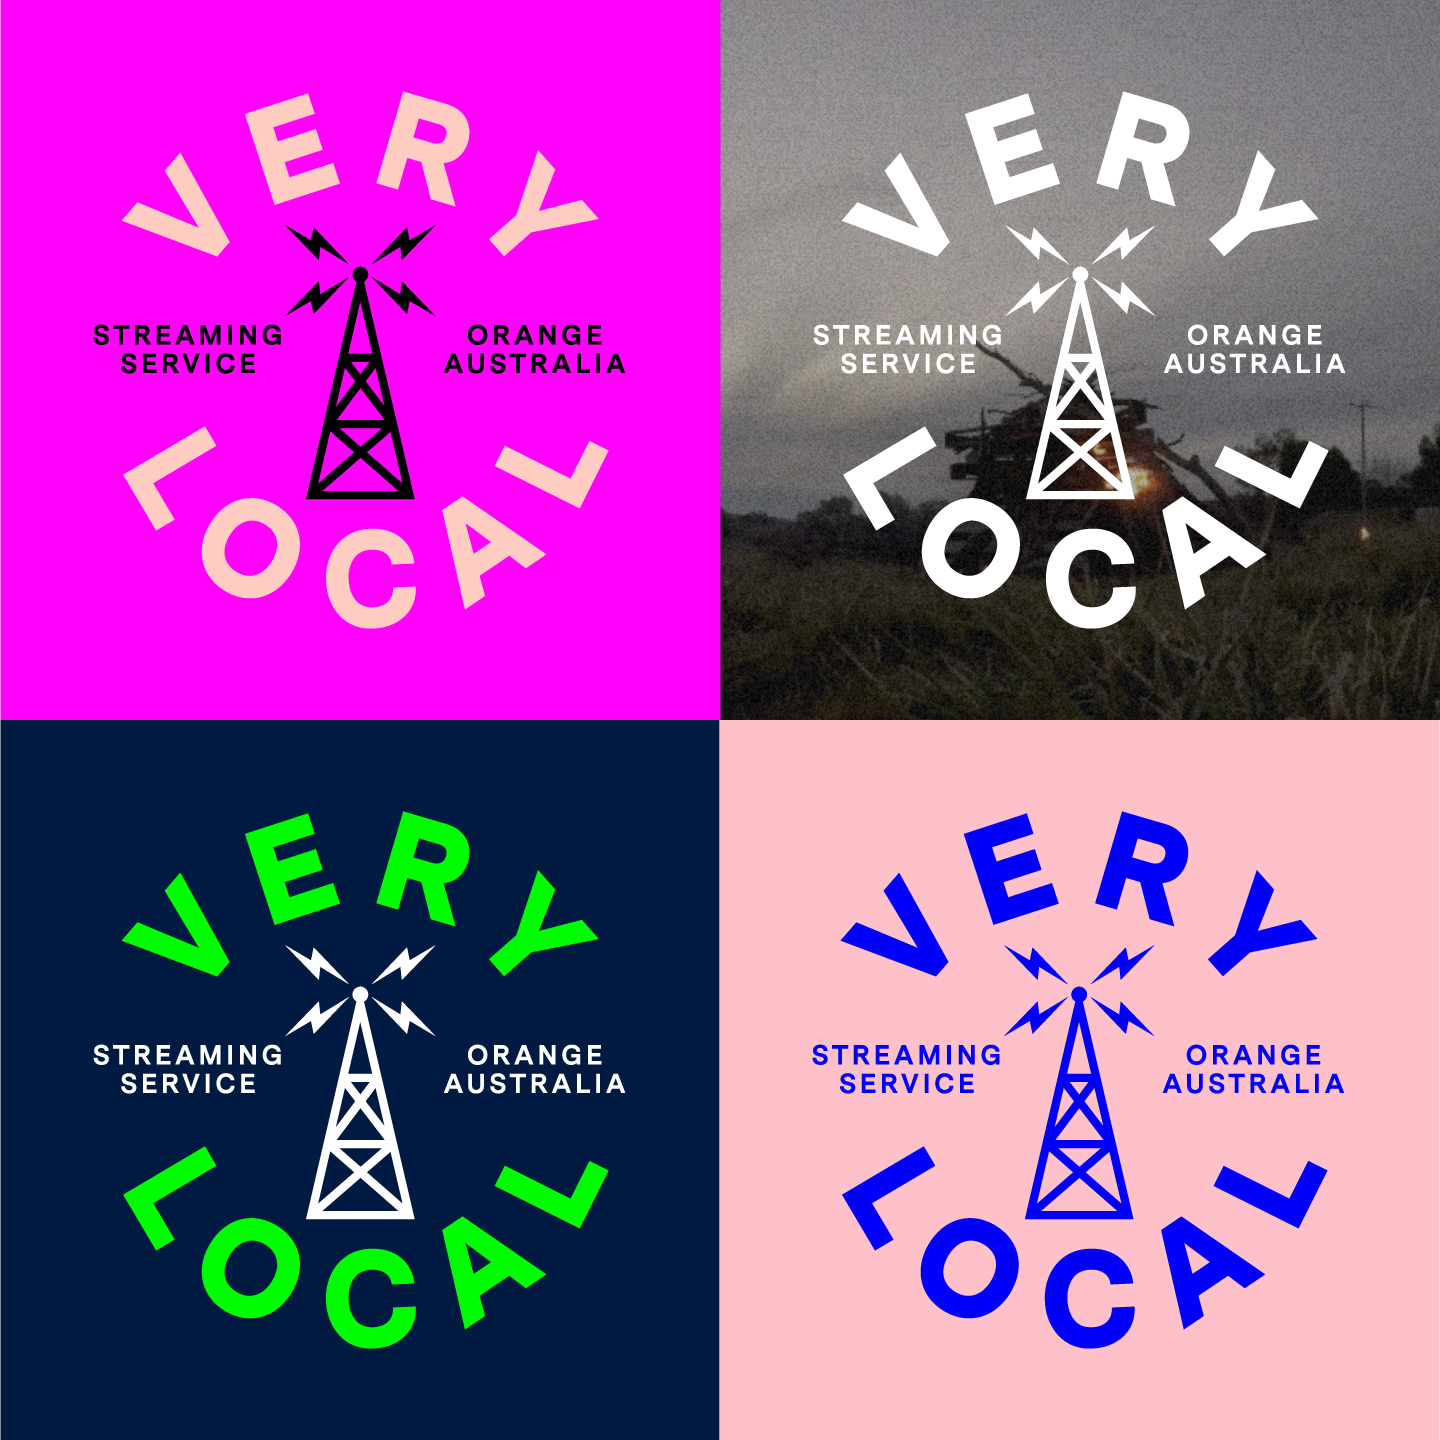 VeryLocal logos